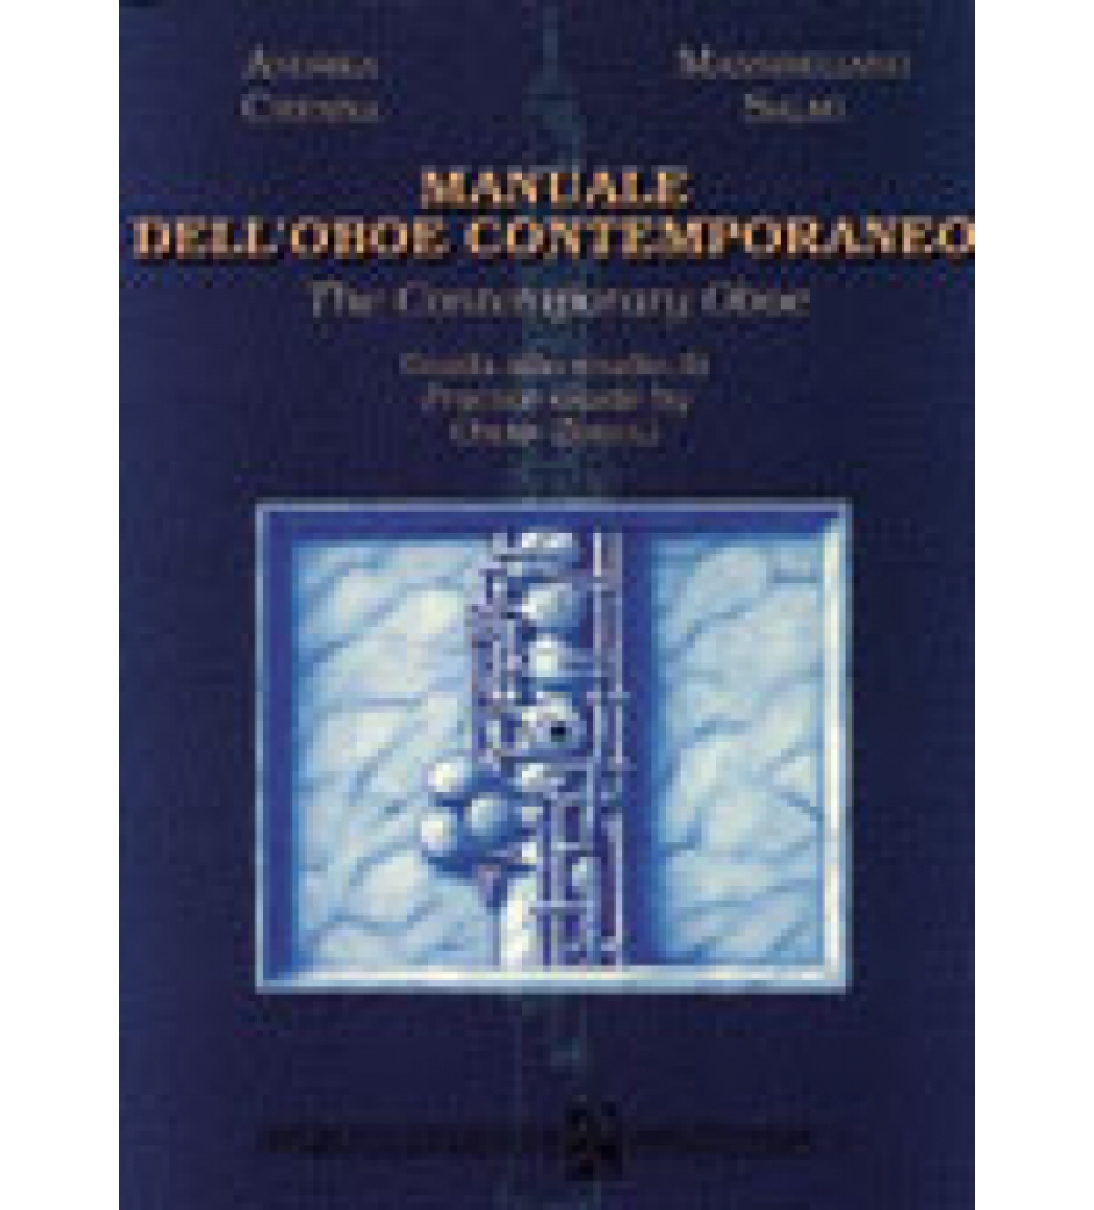 Manuale Dell'Oboe Contemporaneo - The contemporary oboe